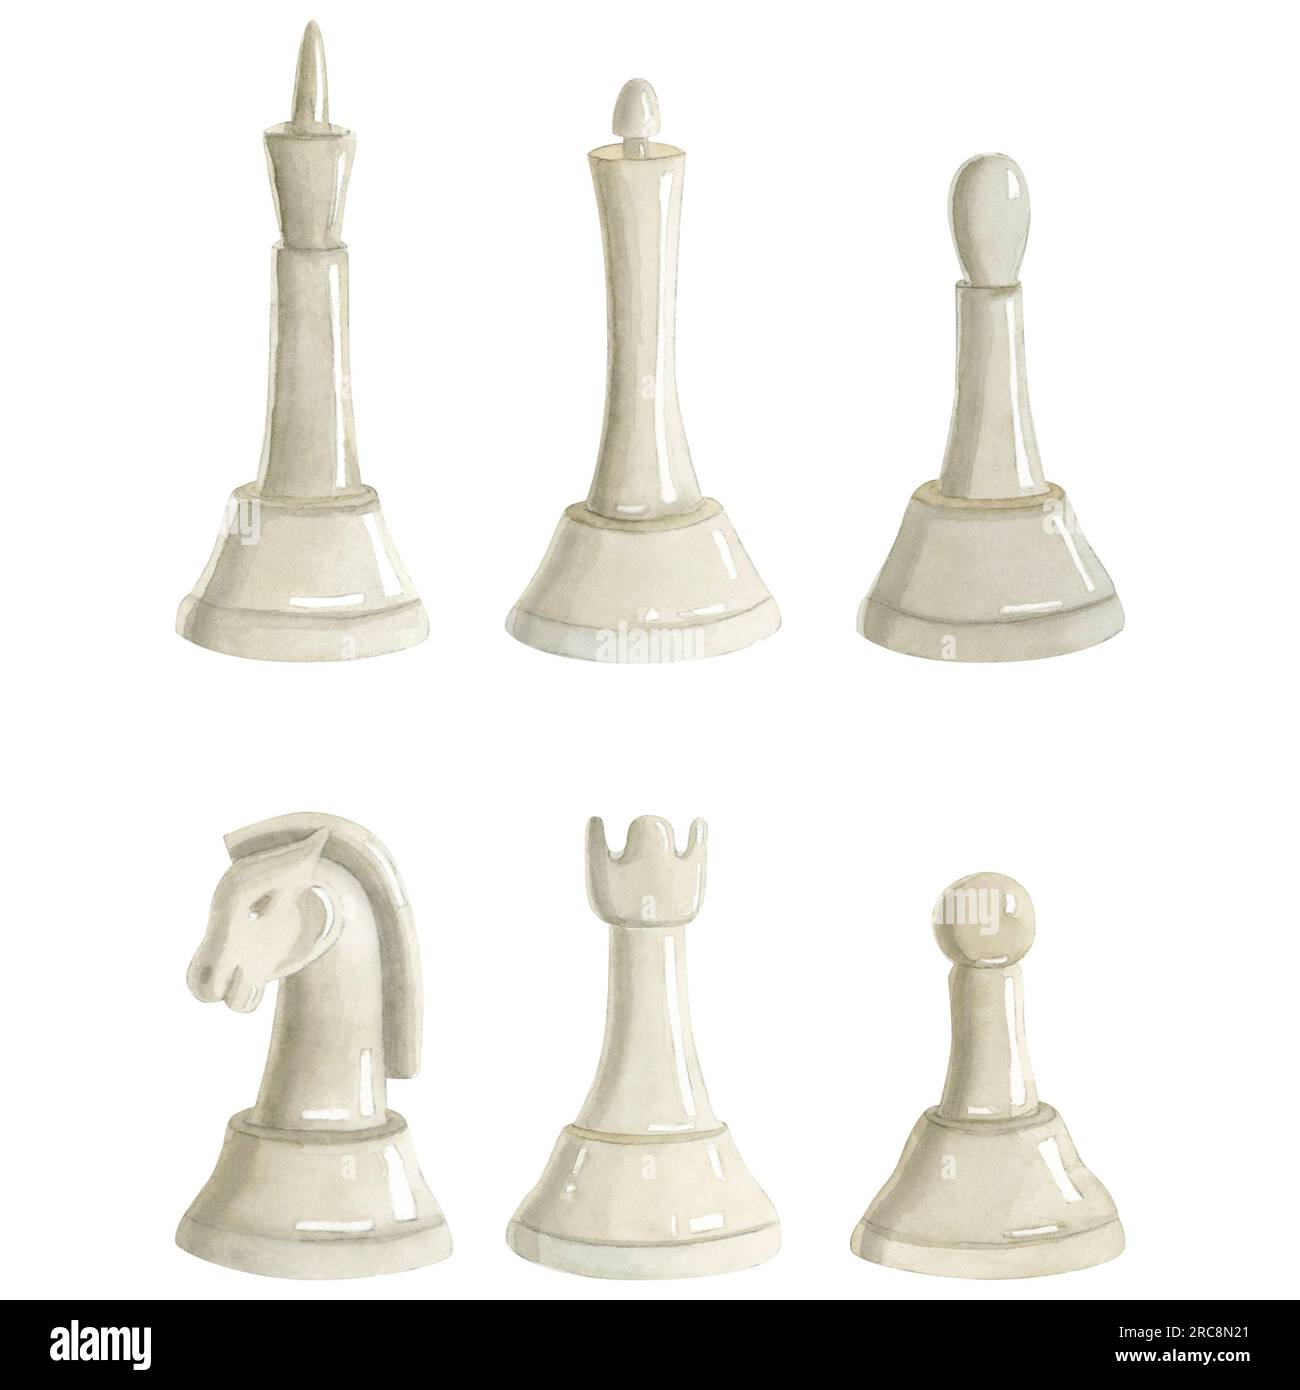 Pair of Black 6 Ceramic Chess Pieces Castles Rooks 